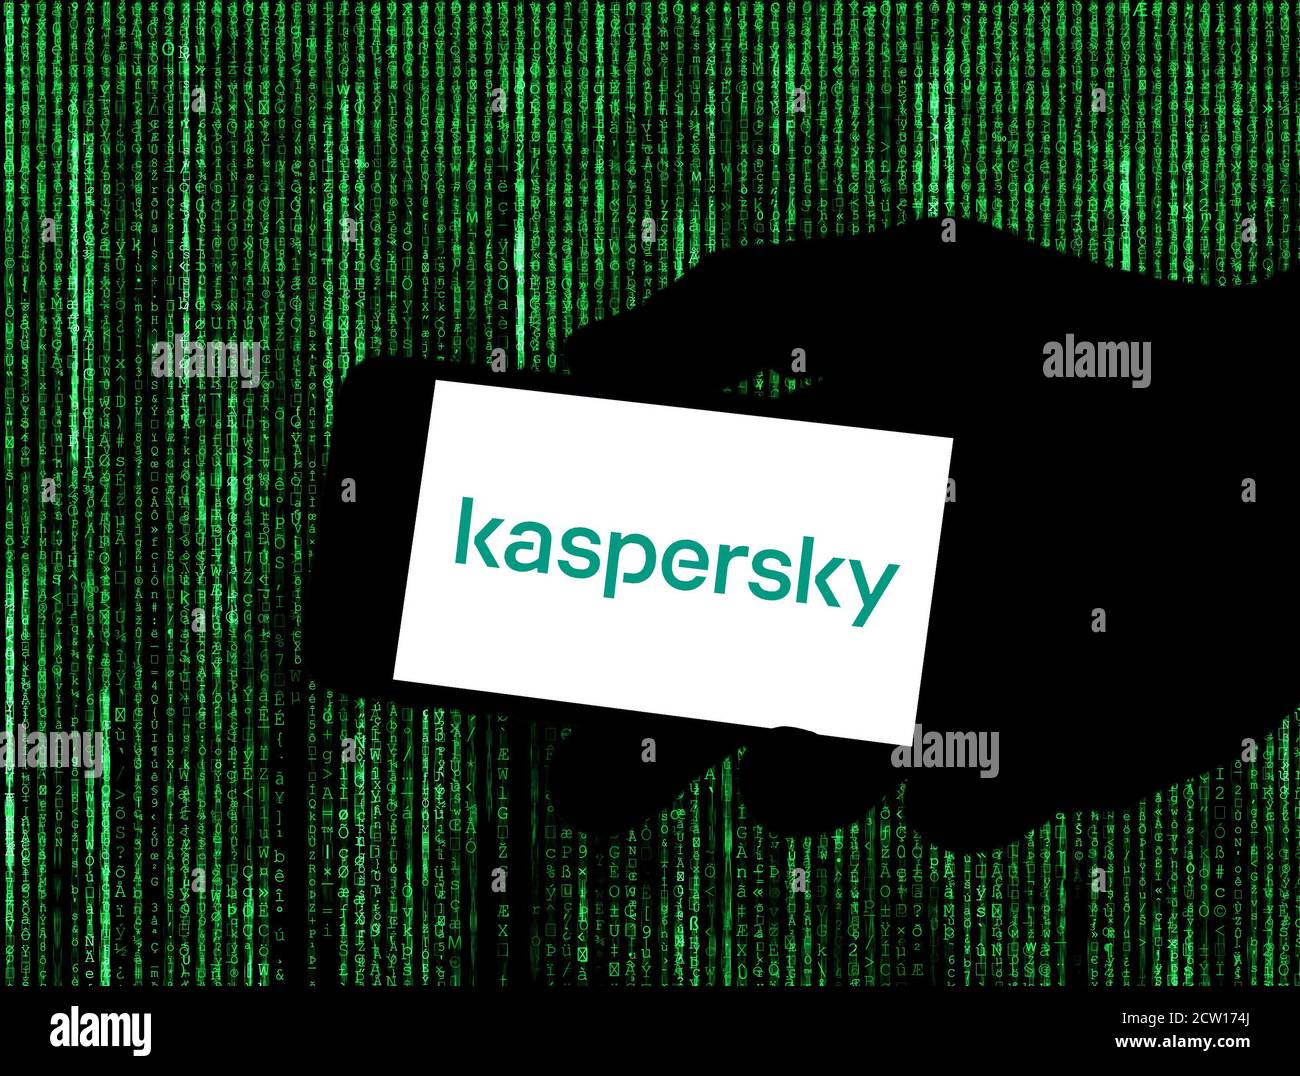 Kaspersky software Stock Photo